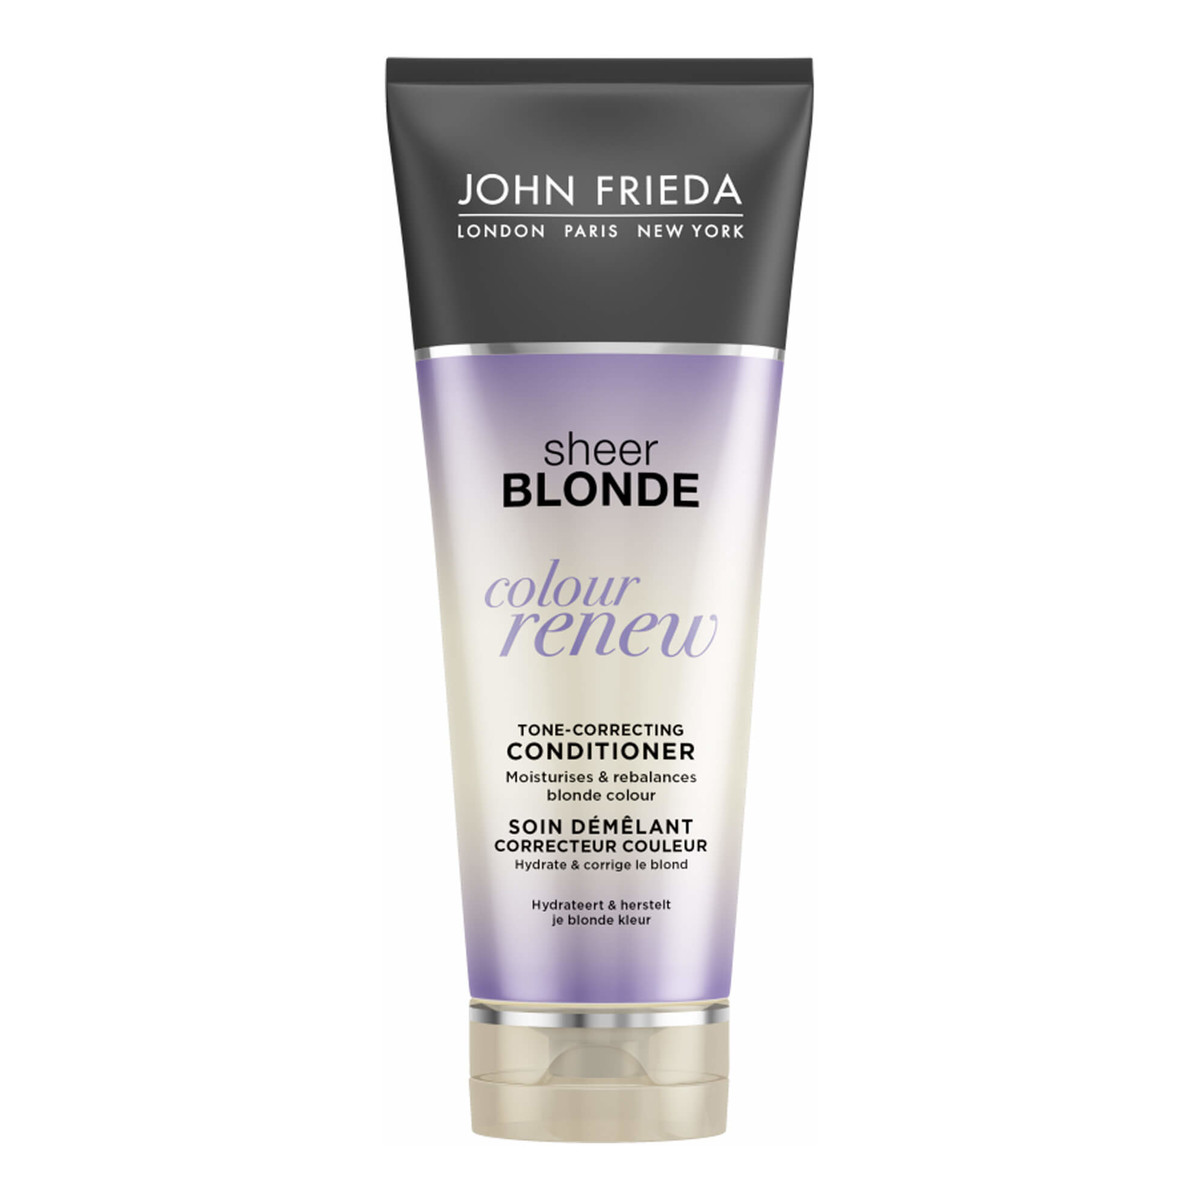 John Frieda Sheer Blonde Colour Renew odżywka do włosów neutralizująca żółty odcień włosów 250ml